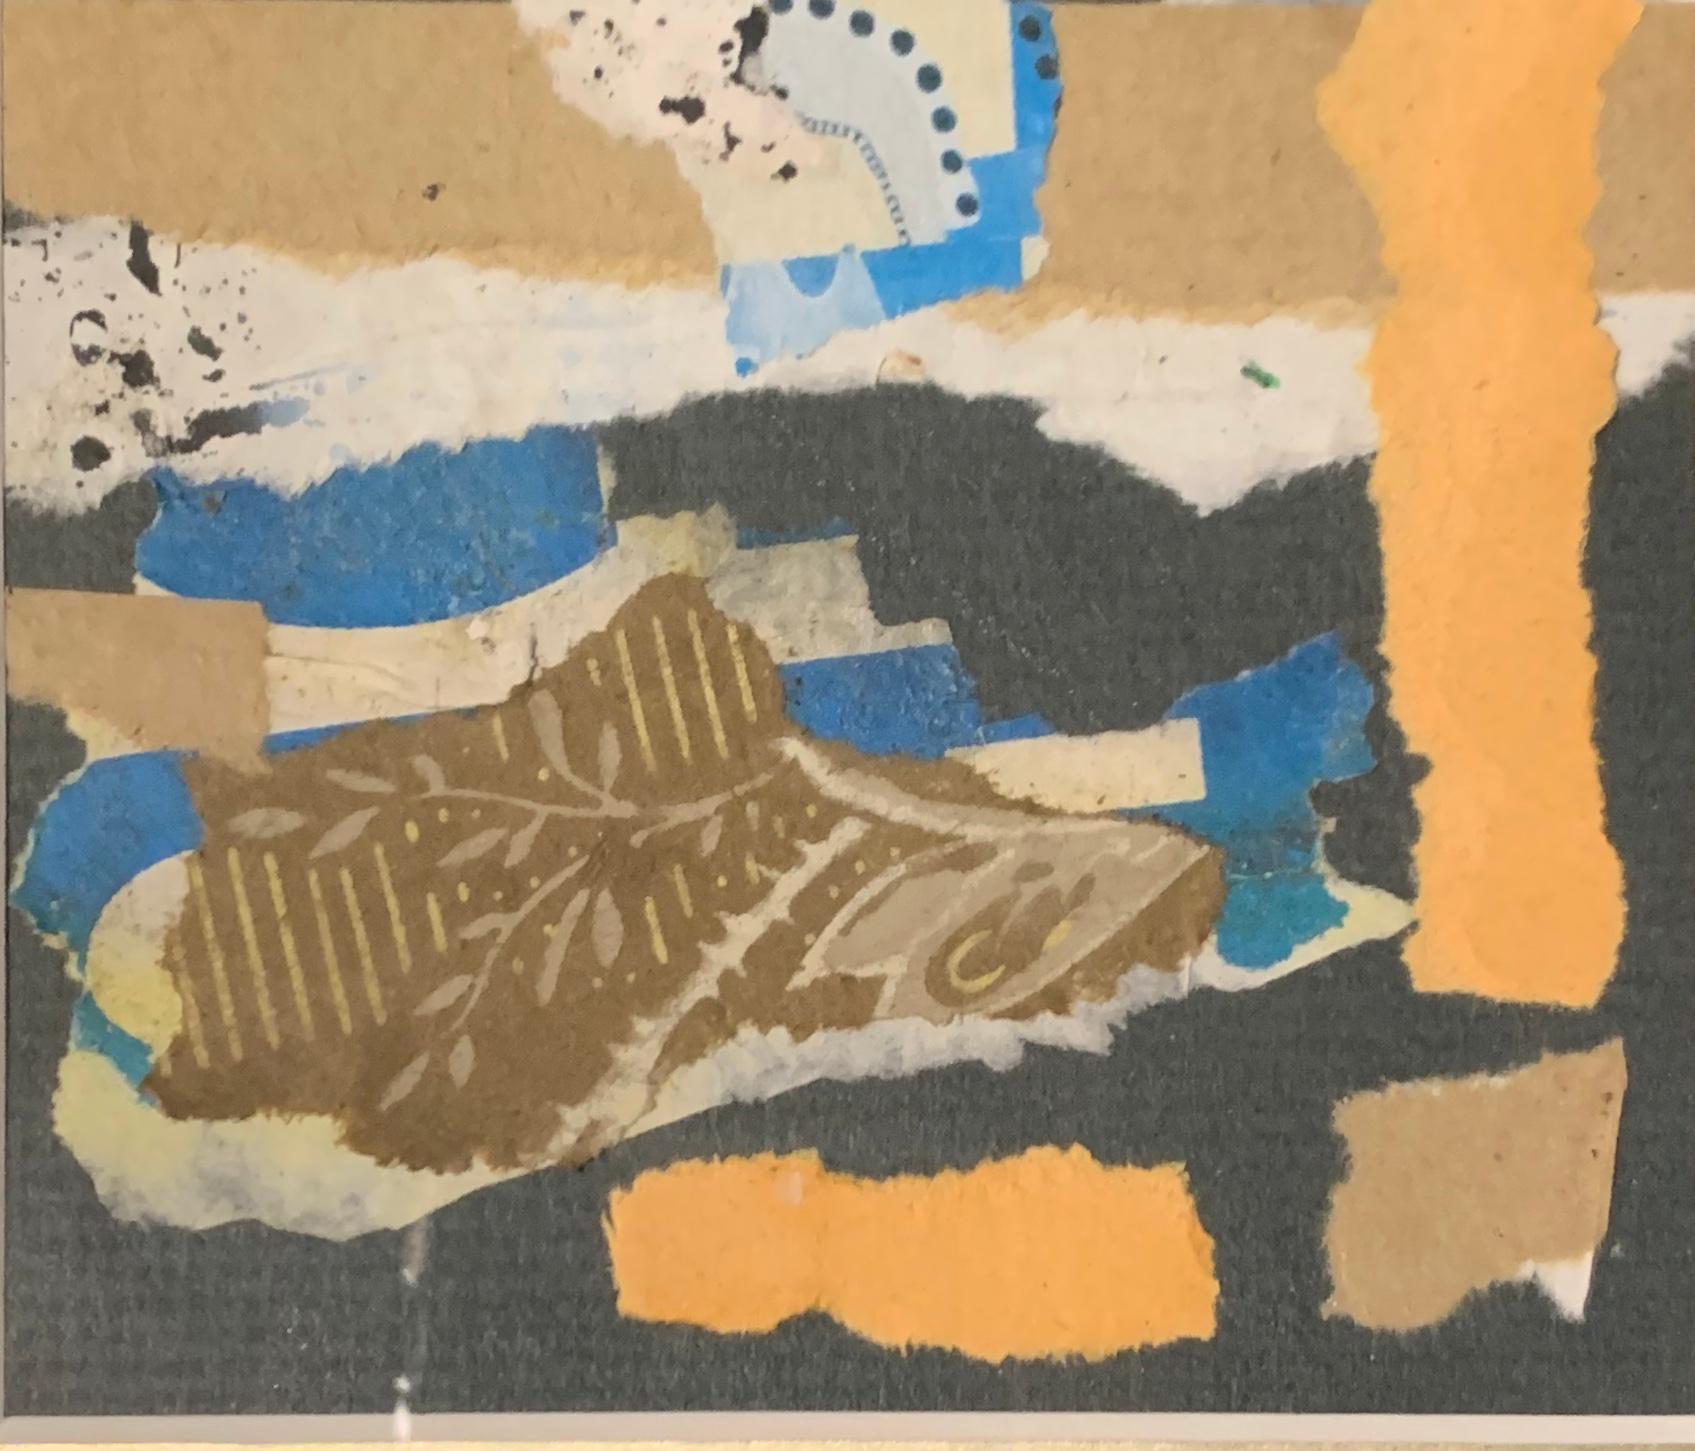 Petit collage contemporain de l'artiste français Hervé Thibault.
Les couleurs sont le corail, le bleu, le noir et le blanc.
Cadre en bois doré et mat noir.
Se marie bien avec P1306.